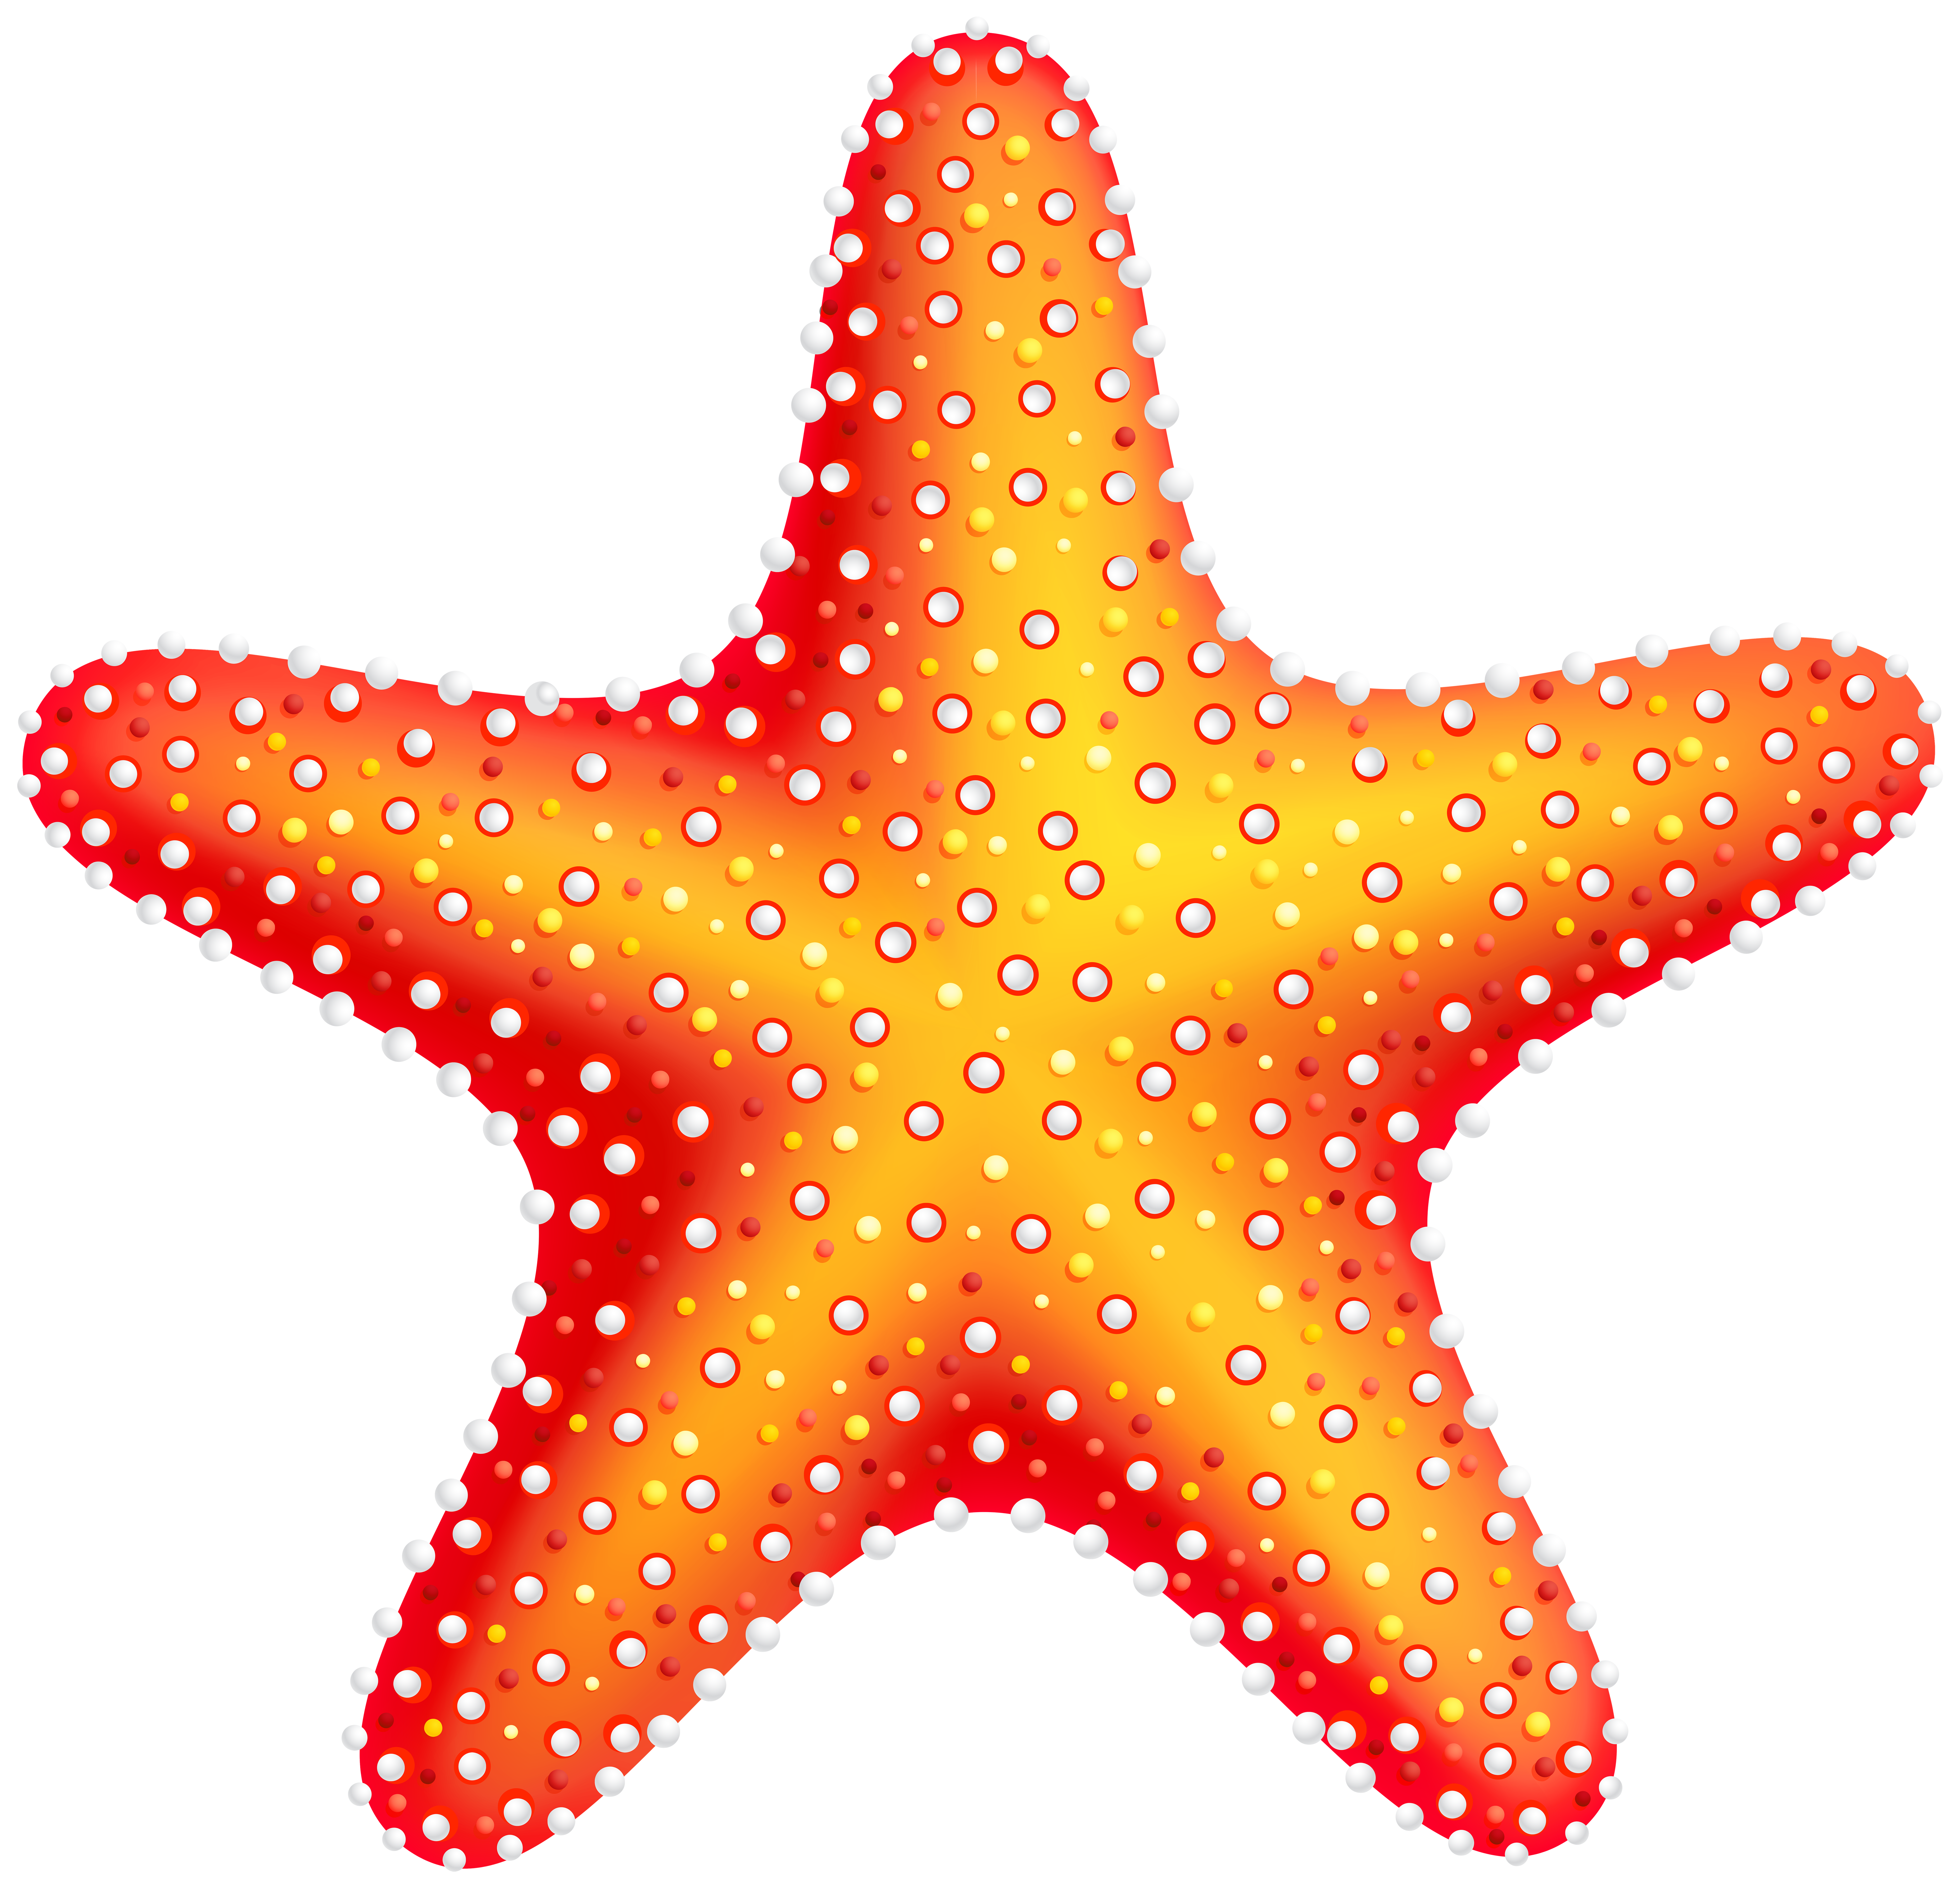 Starfish Clipart | Free .